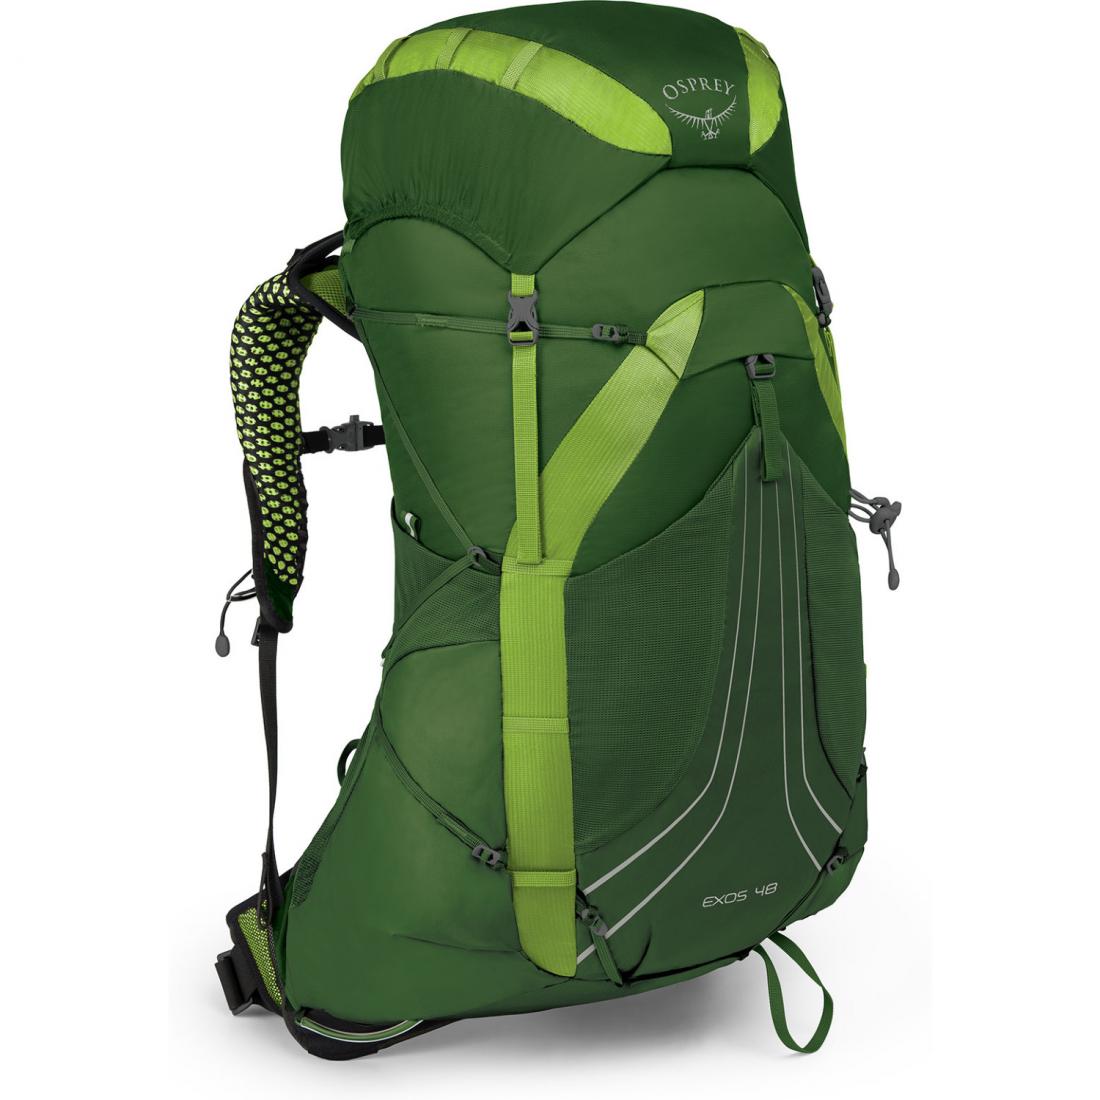 Рюкзак Exos 48 Osprey, цвет зеленый, размер 51 л - фото 1